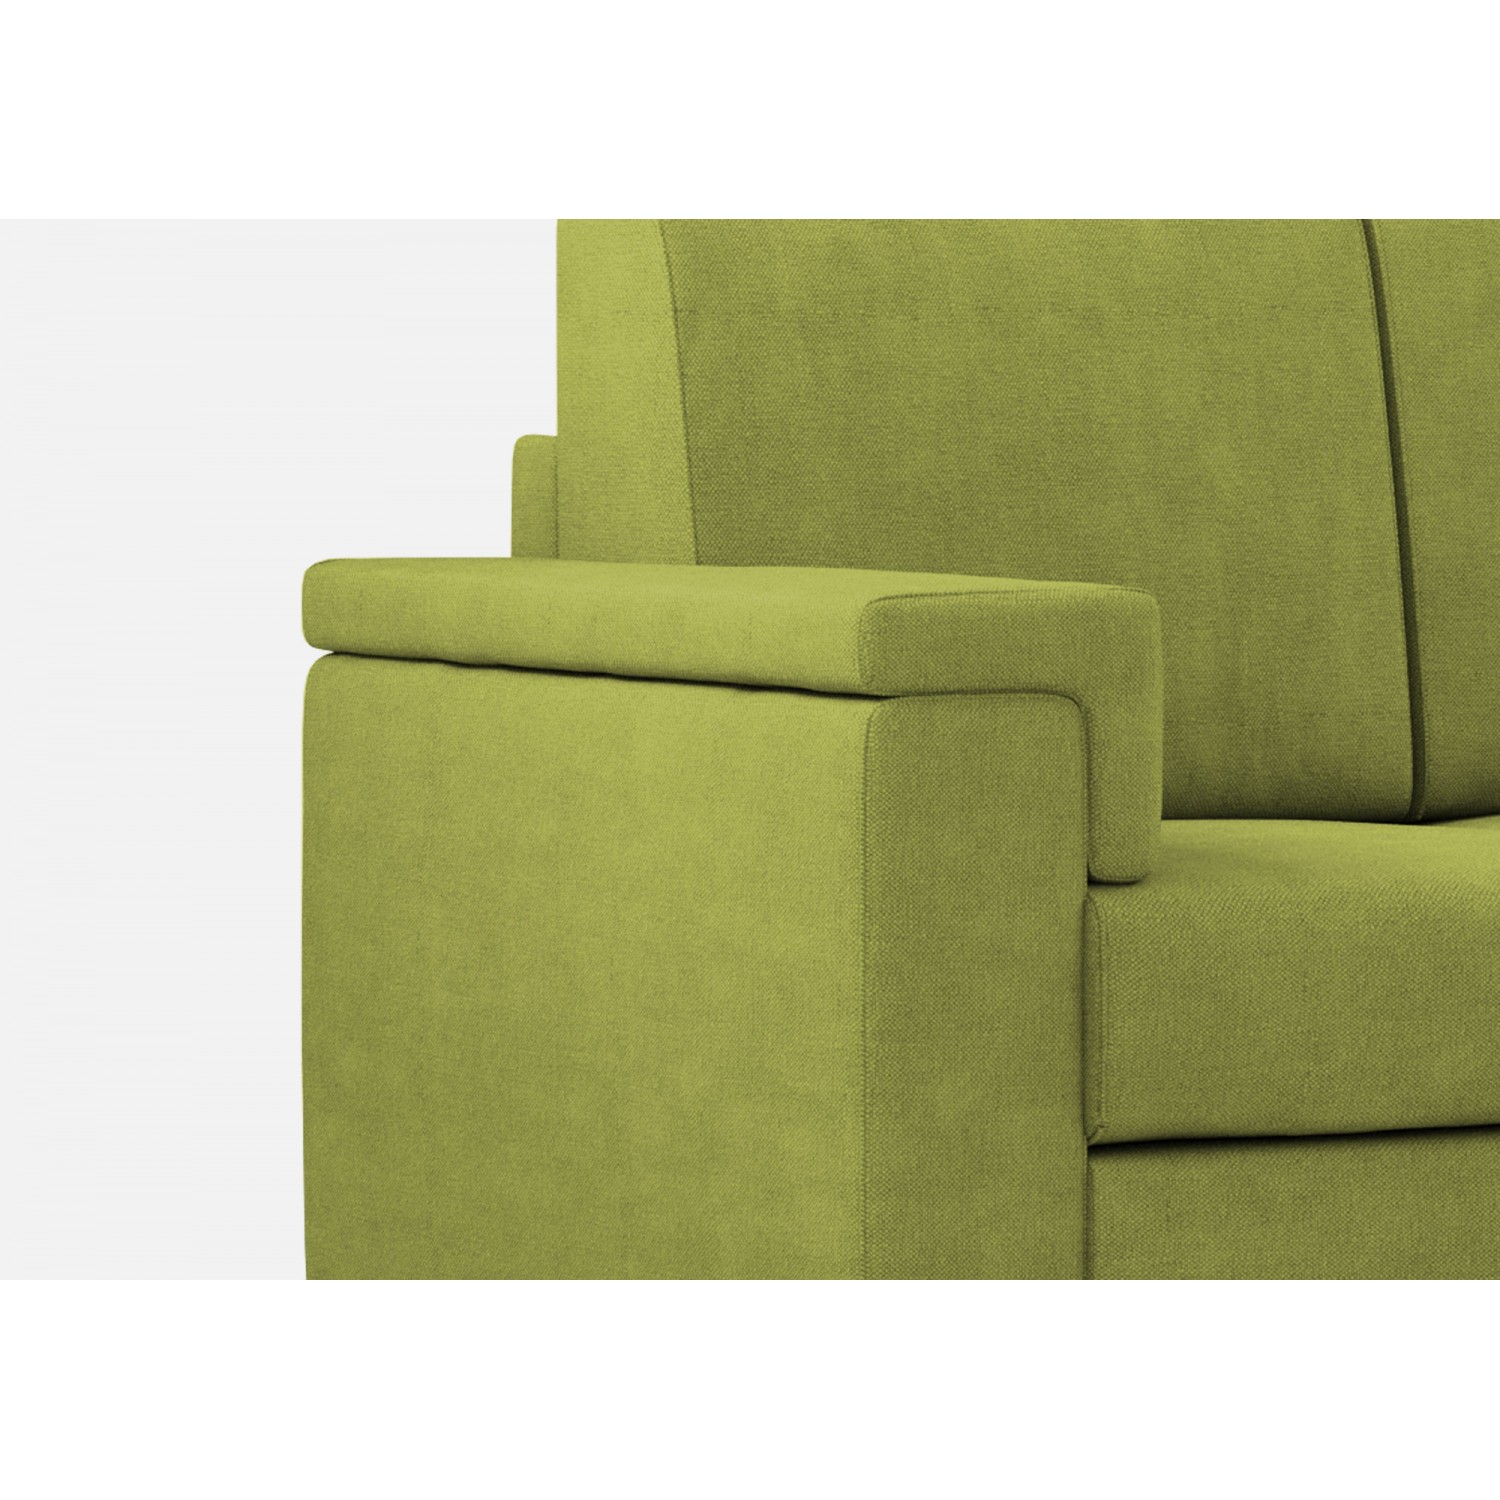 Ityhome Divano Marrak 2 posti (due sedute da 60cm) + pouf misure esterne L.148 P.155 colore verde